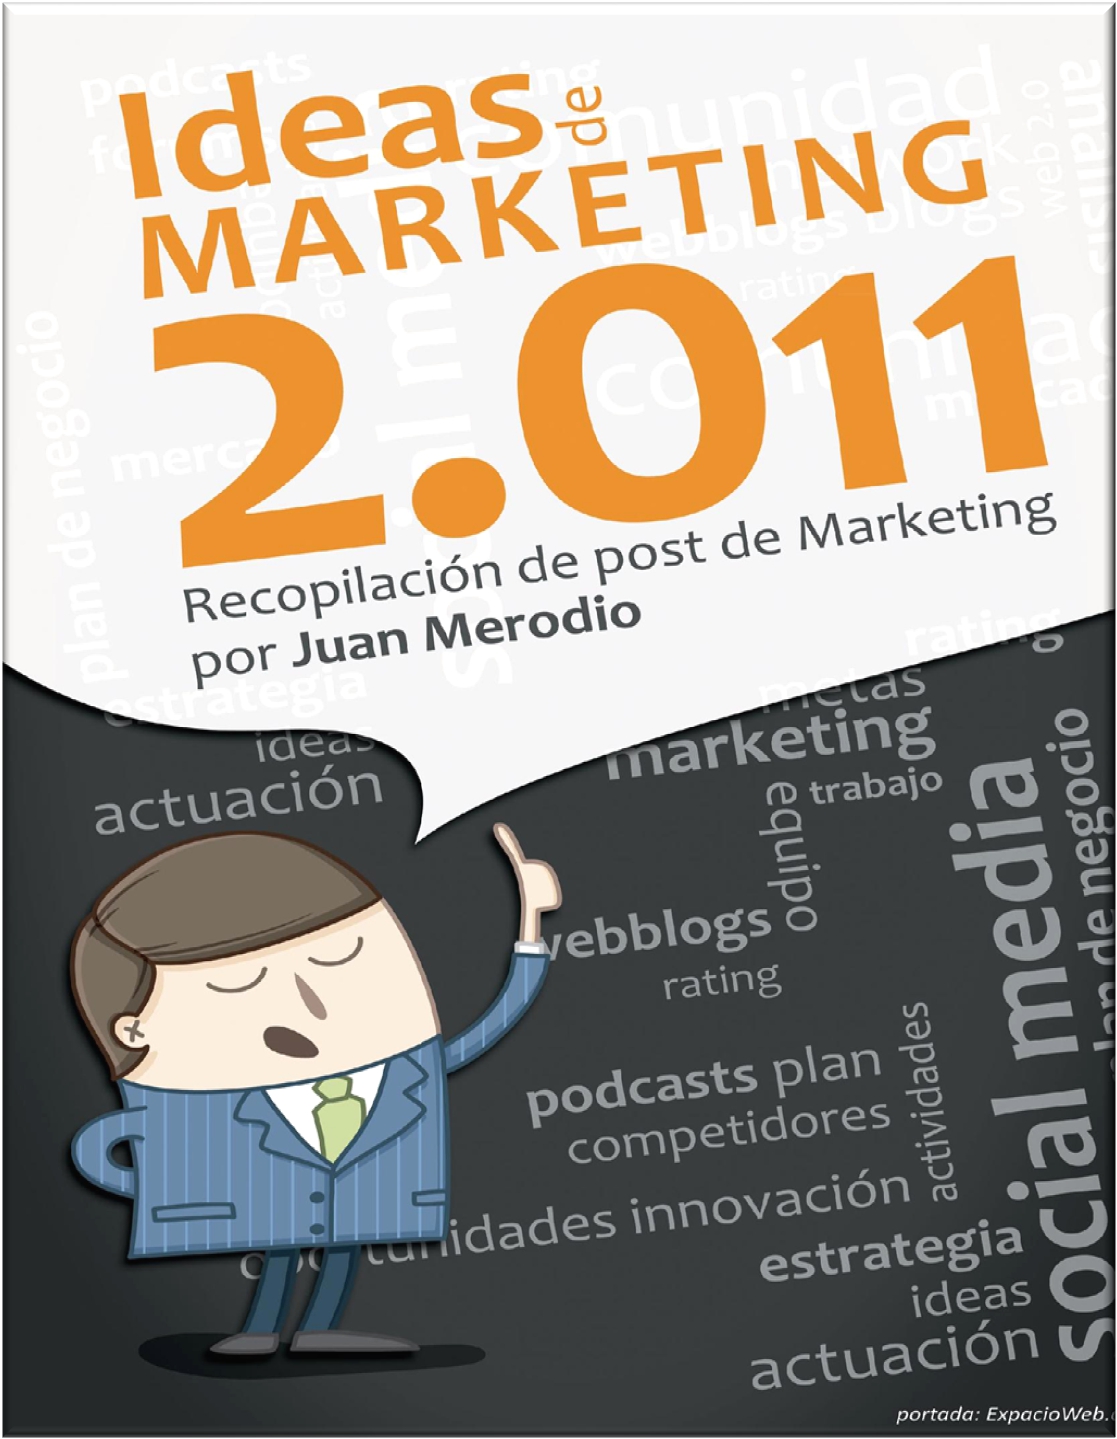 Ideas de Marketing 2011recopilación de post de Marketing por Juan Merodio